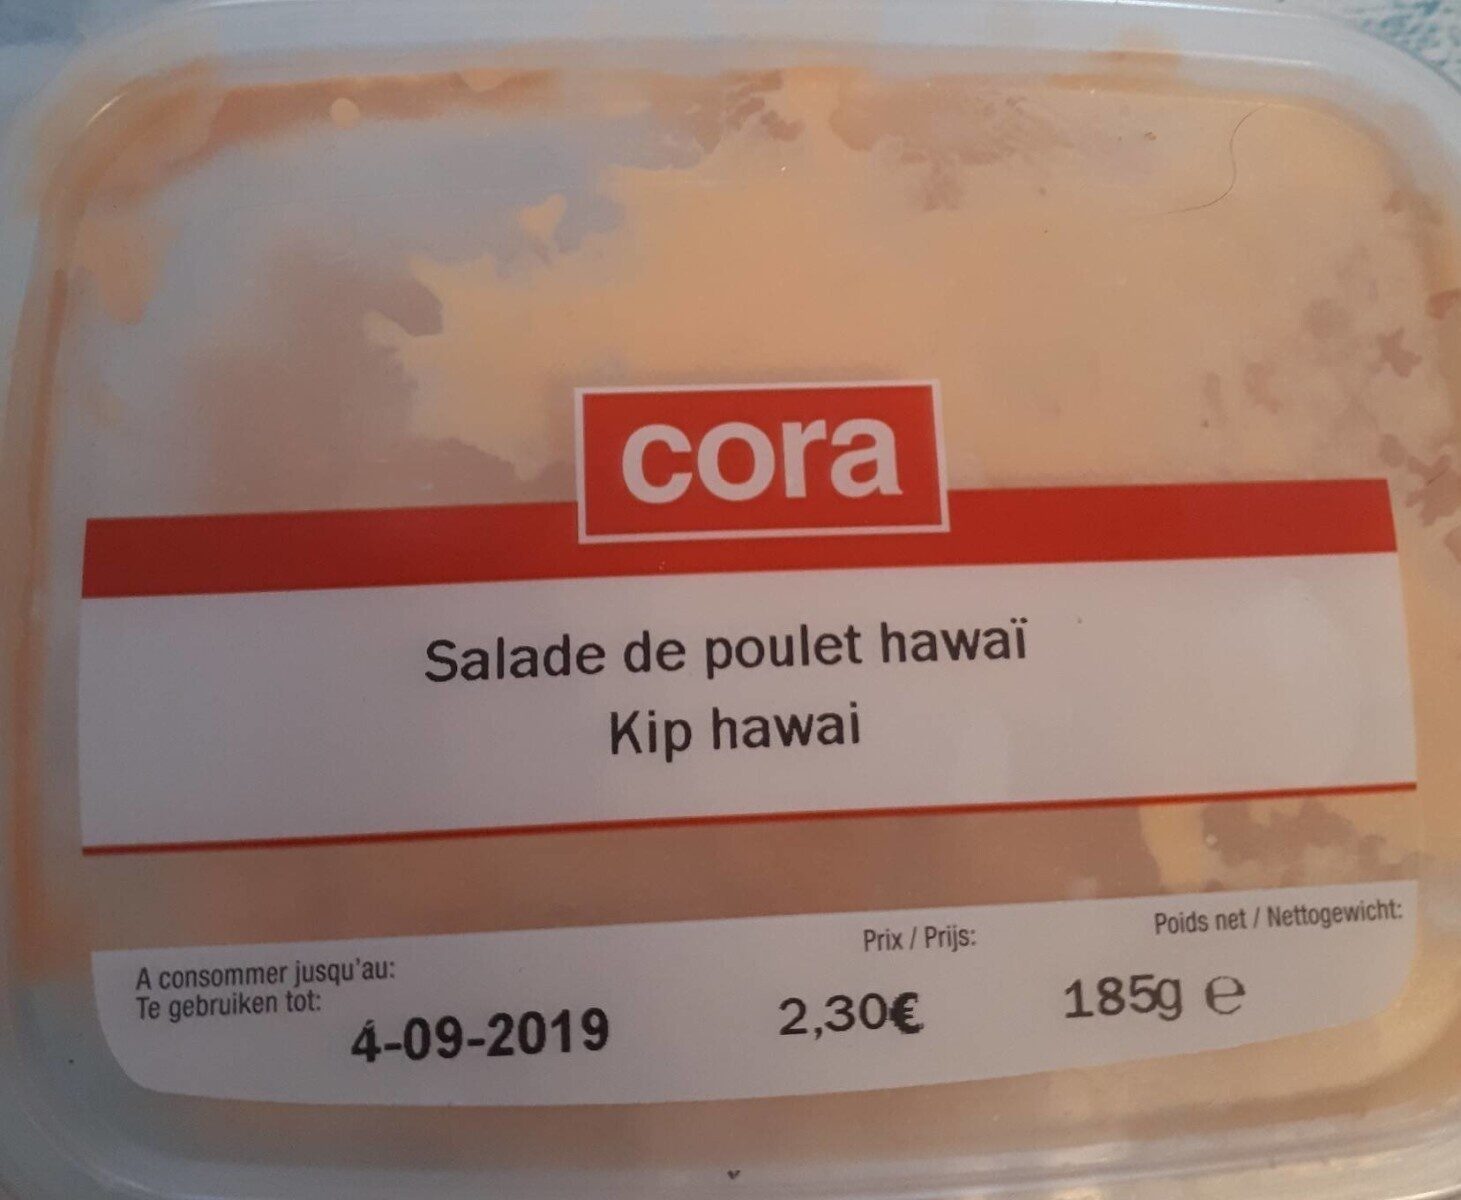 Salade de poulet hawaï - Product - fr